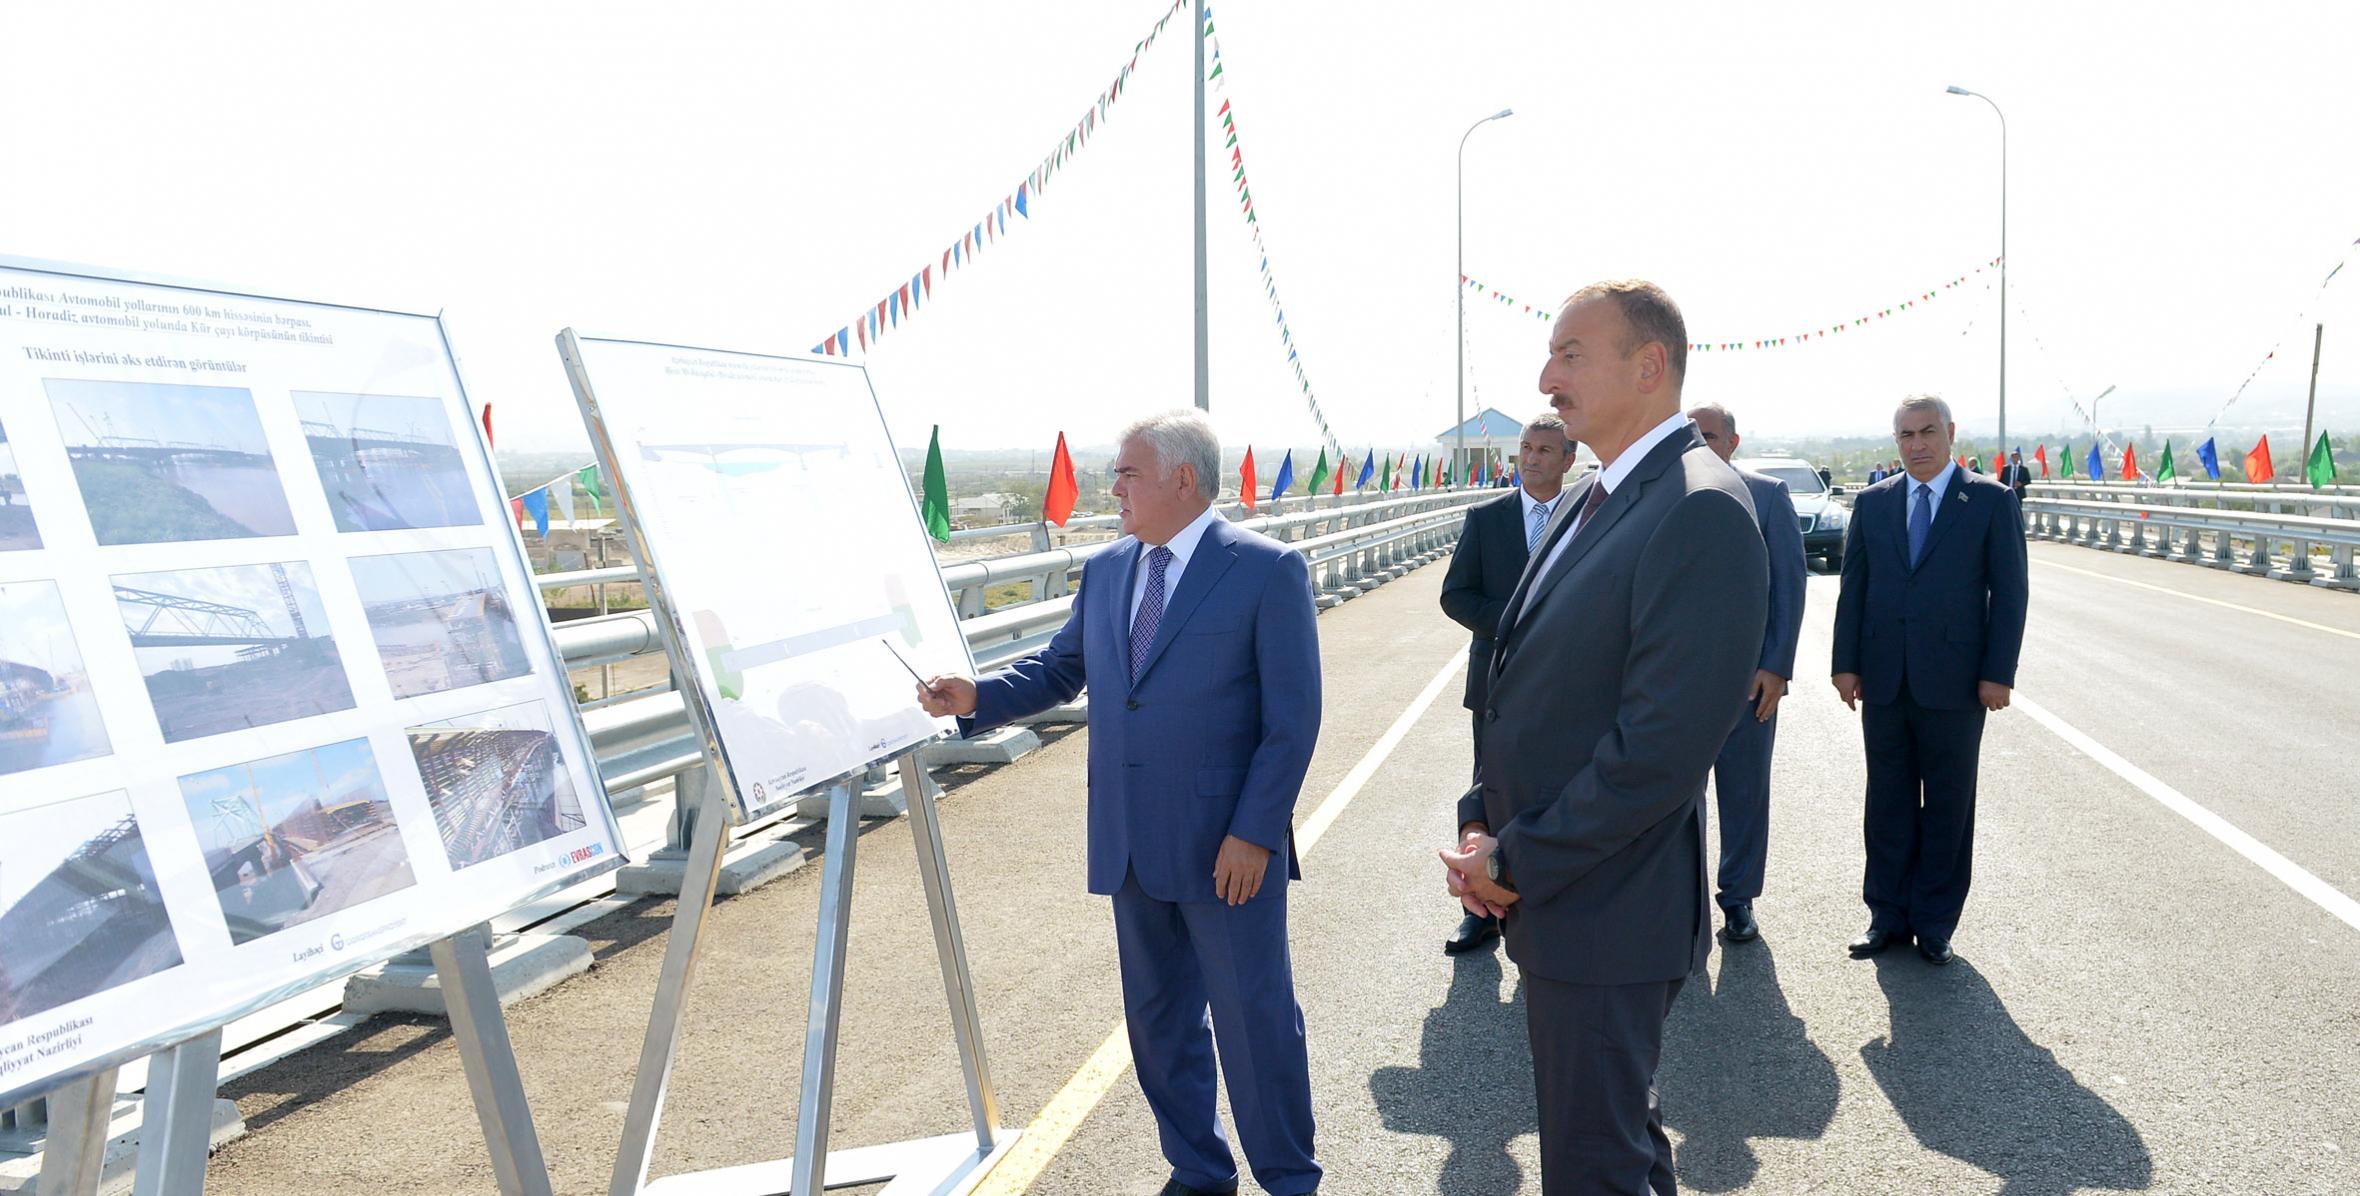 Ильхам Алиев в рамках поездки в Бейляган принял участие в открытии автомобильного моста, построенного над рекой Кура - на участке дороги Гаджигабул-Бахрамтепе, проходящем через город Ширван